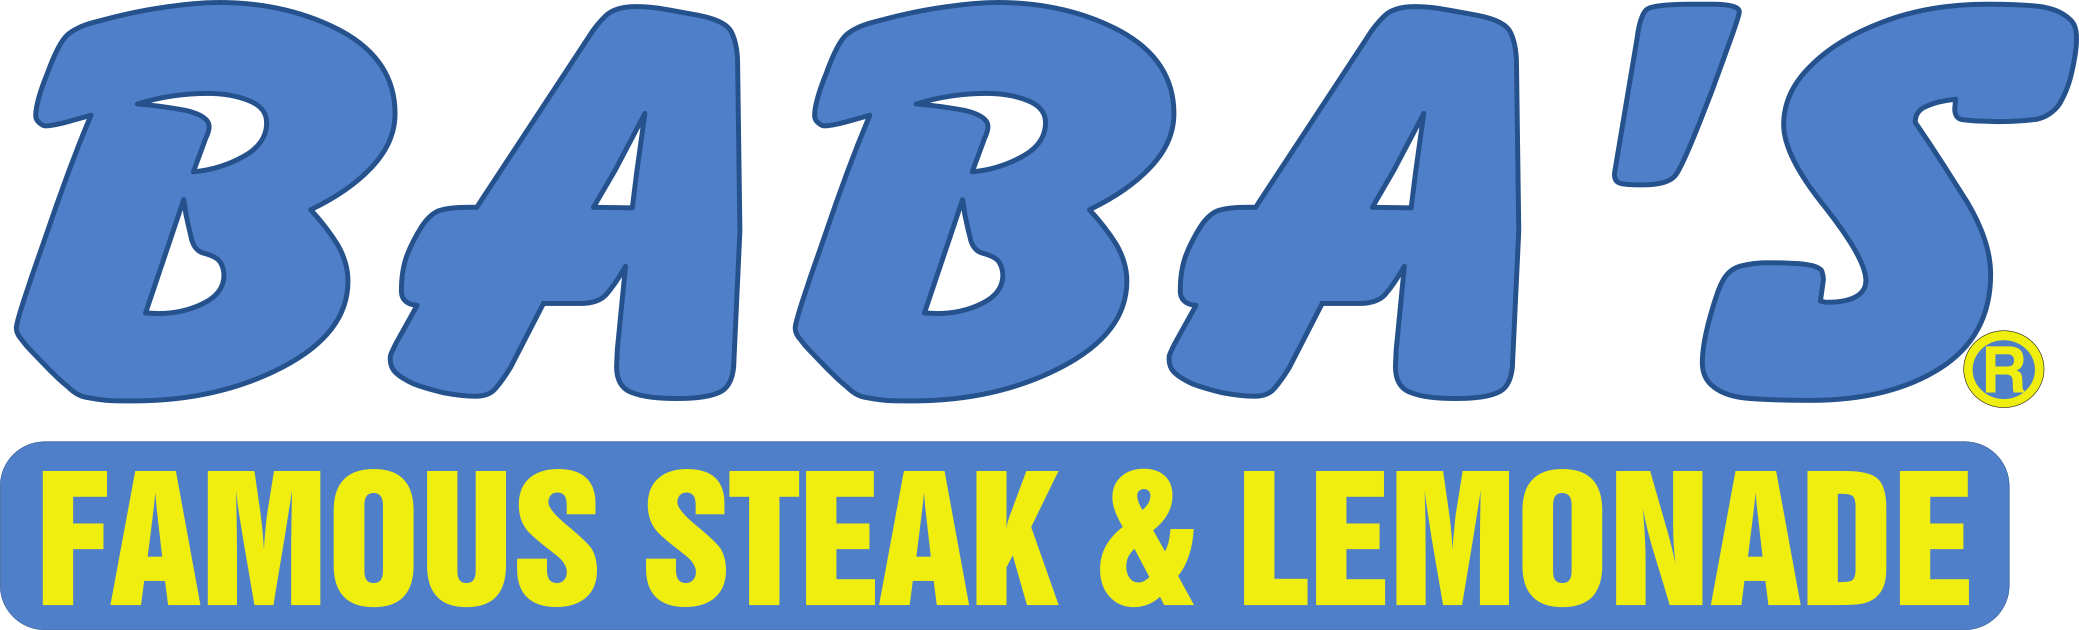 Baba's Steak & Lemonade